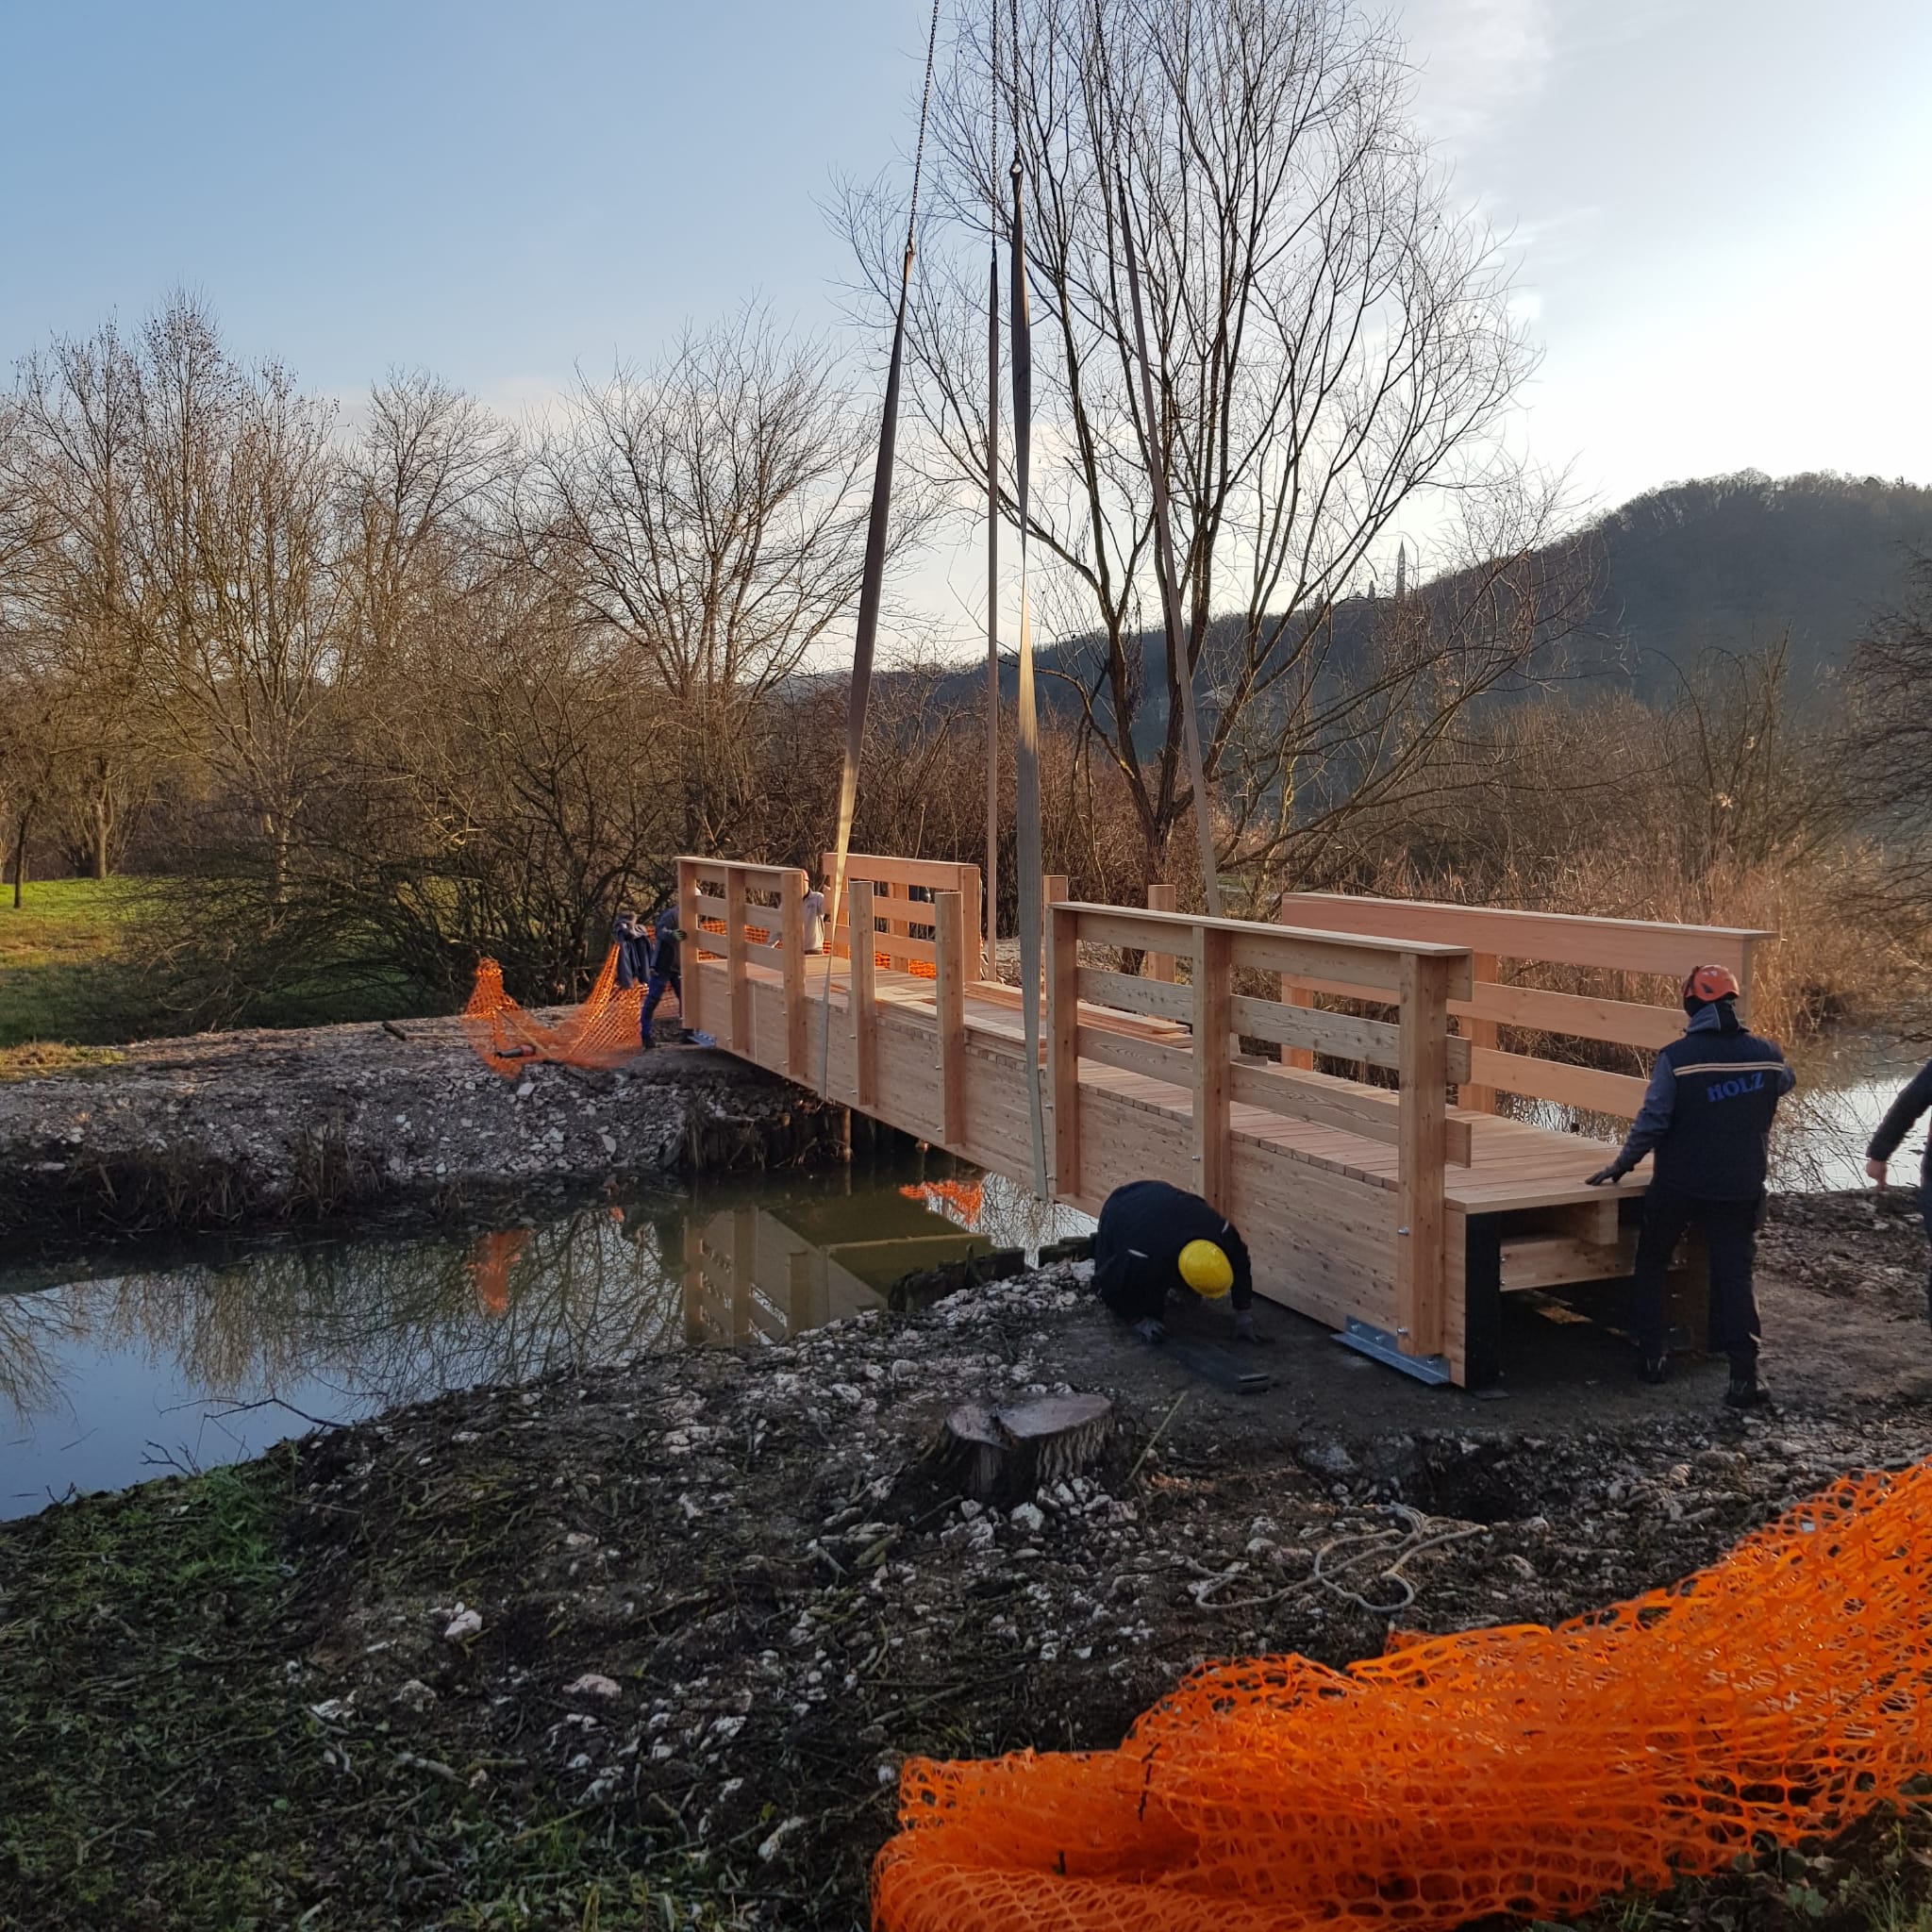 Lago di Fimon: posato il nuovo ponte pedonale